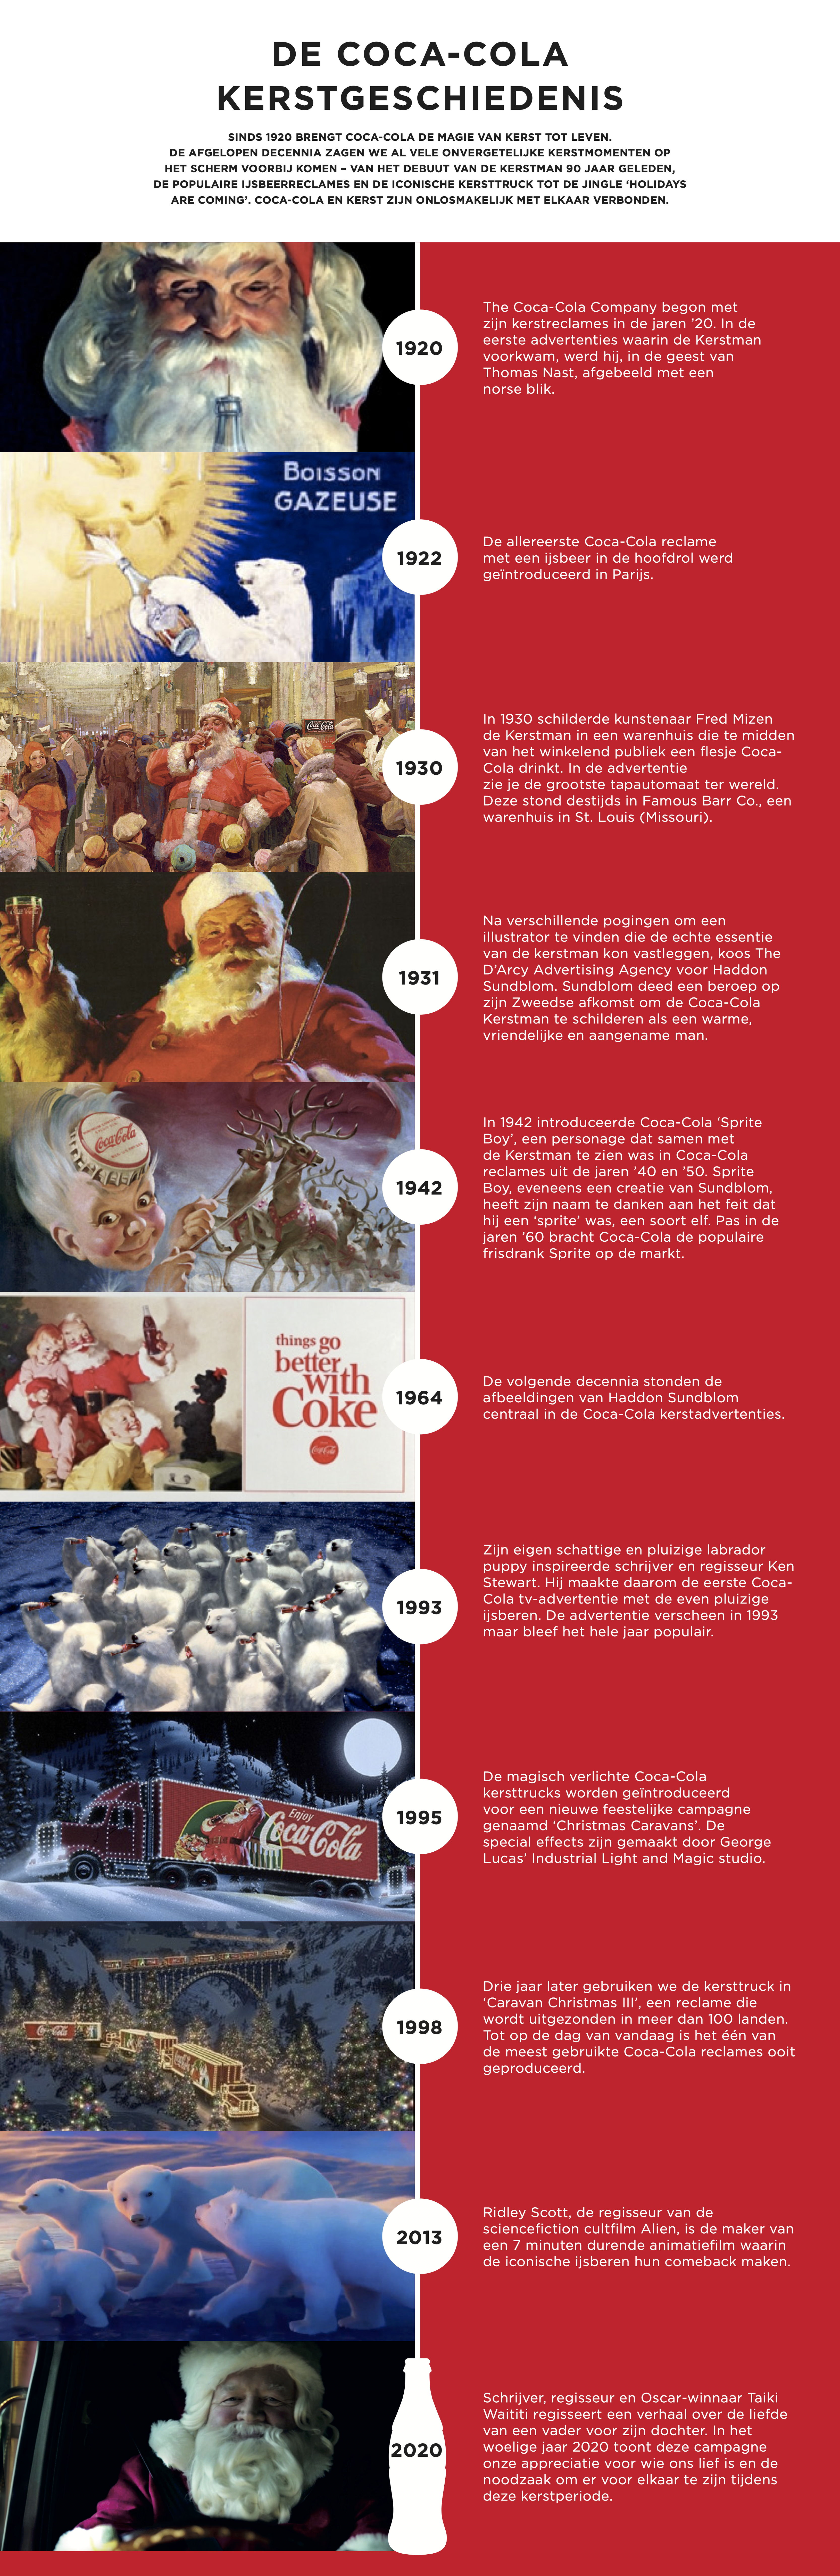 Coca-Cola Kerstgeschiedenis